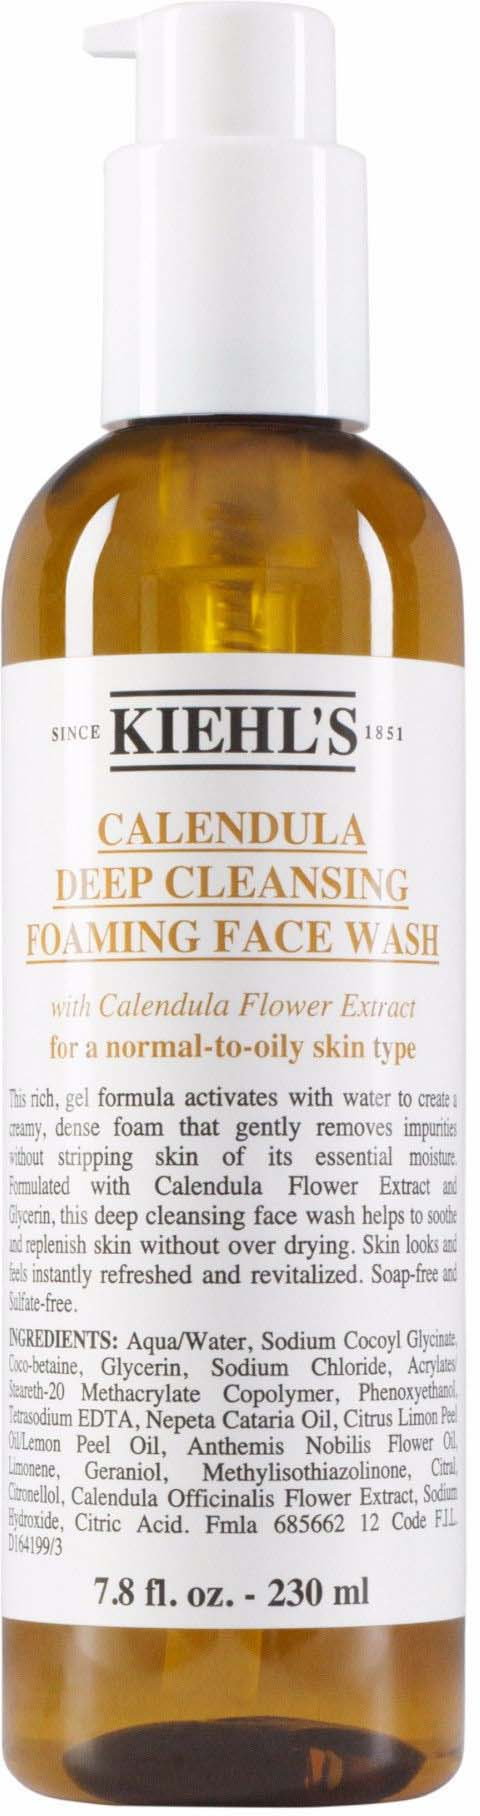 Calendula Deep Cleansing Foaming Face Wash - Pianka oczyszczająca do twarzy z nagietka lekarskiego